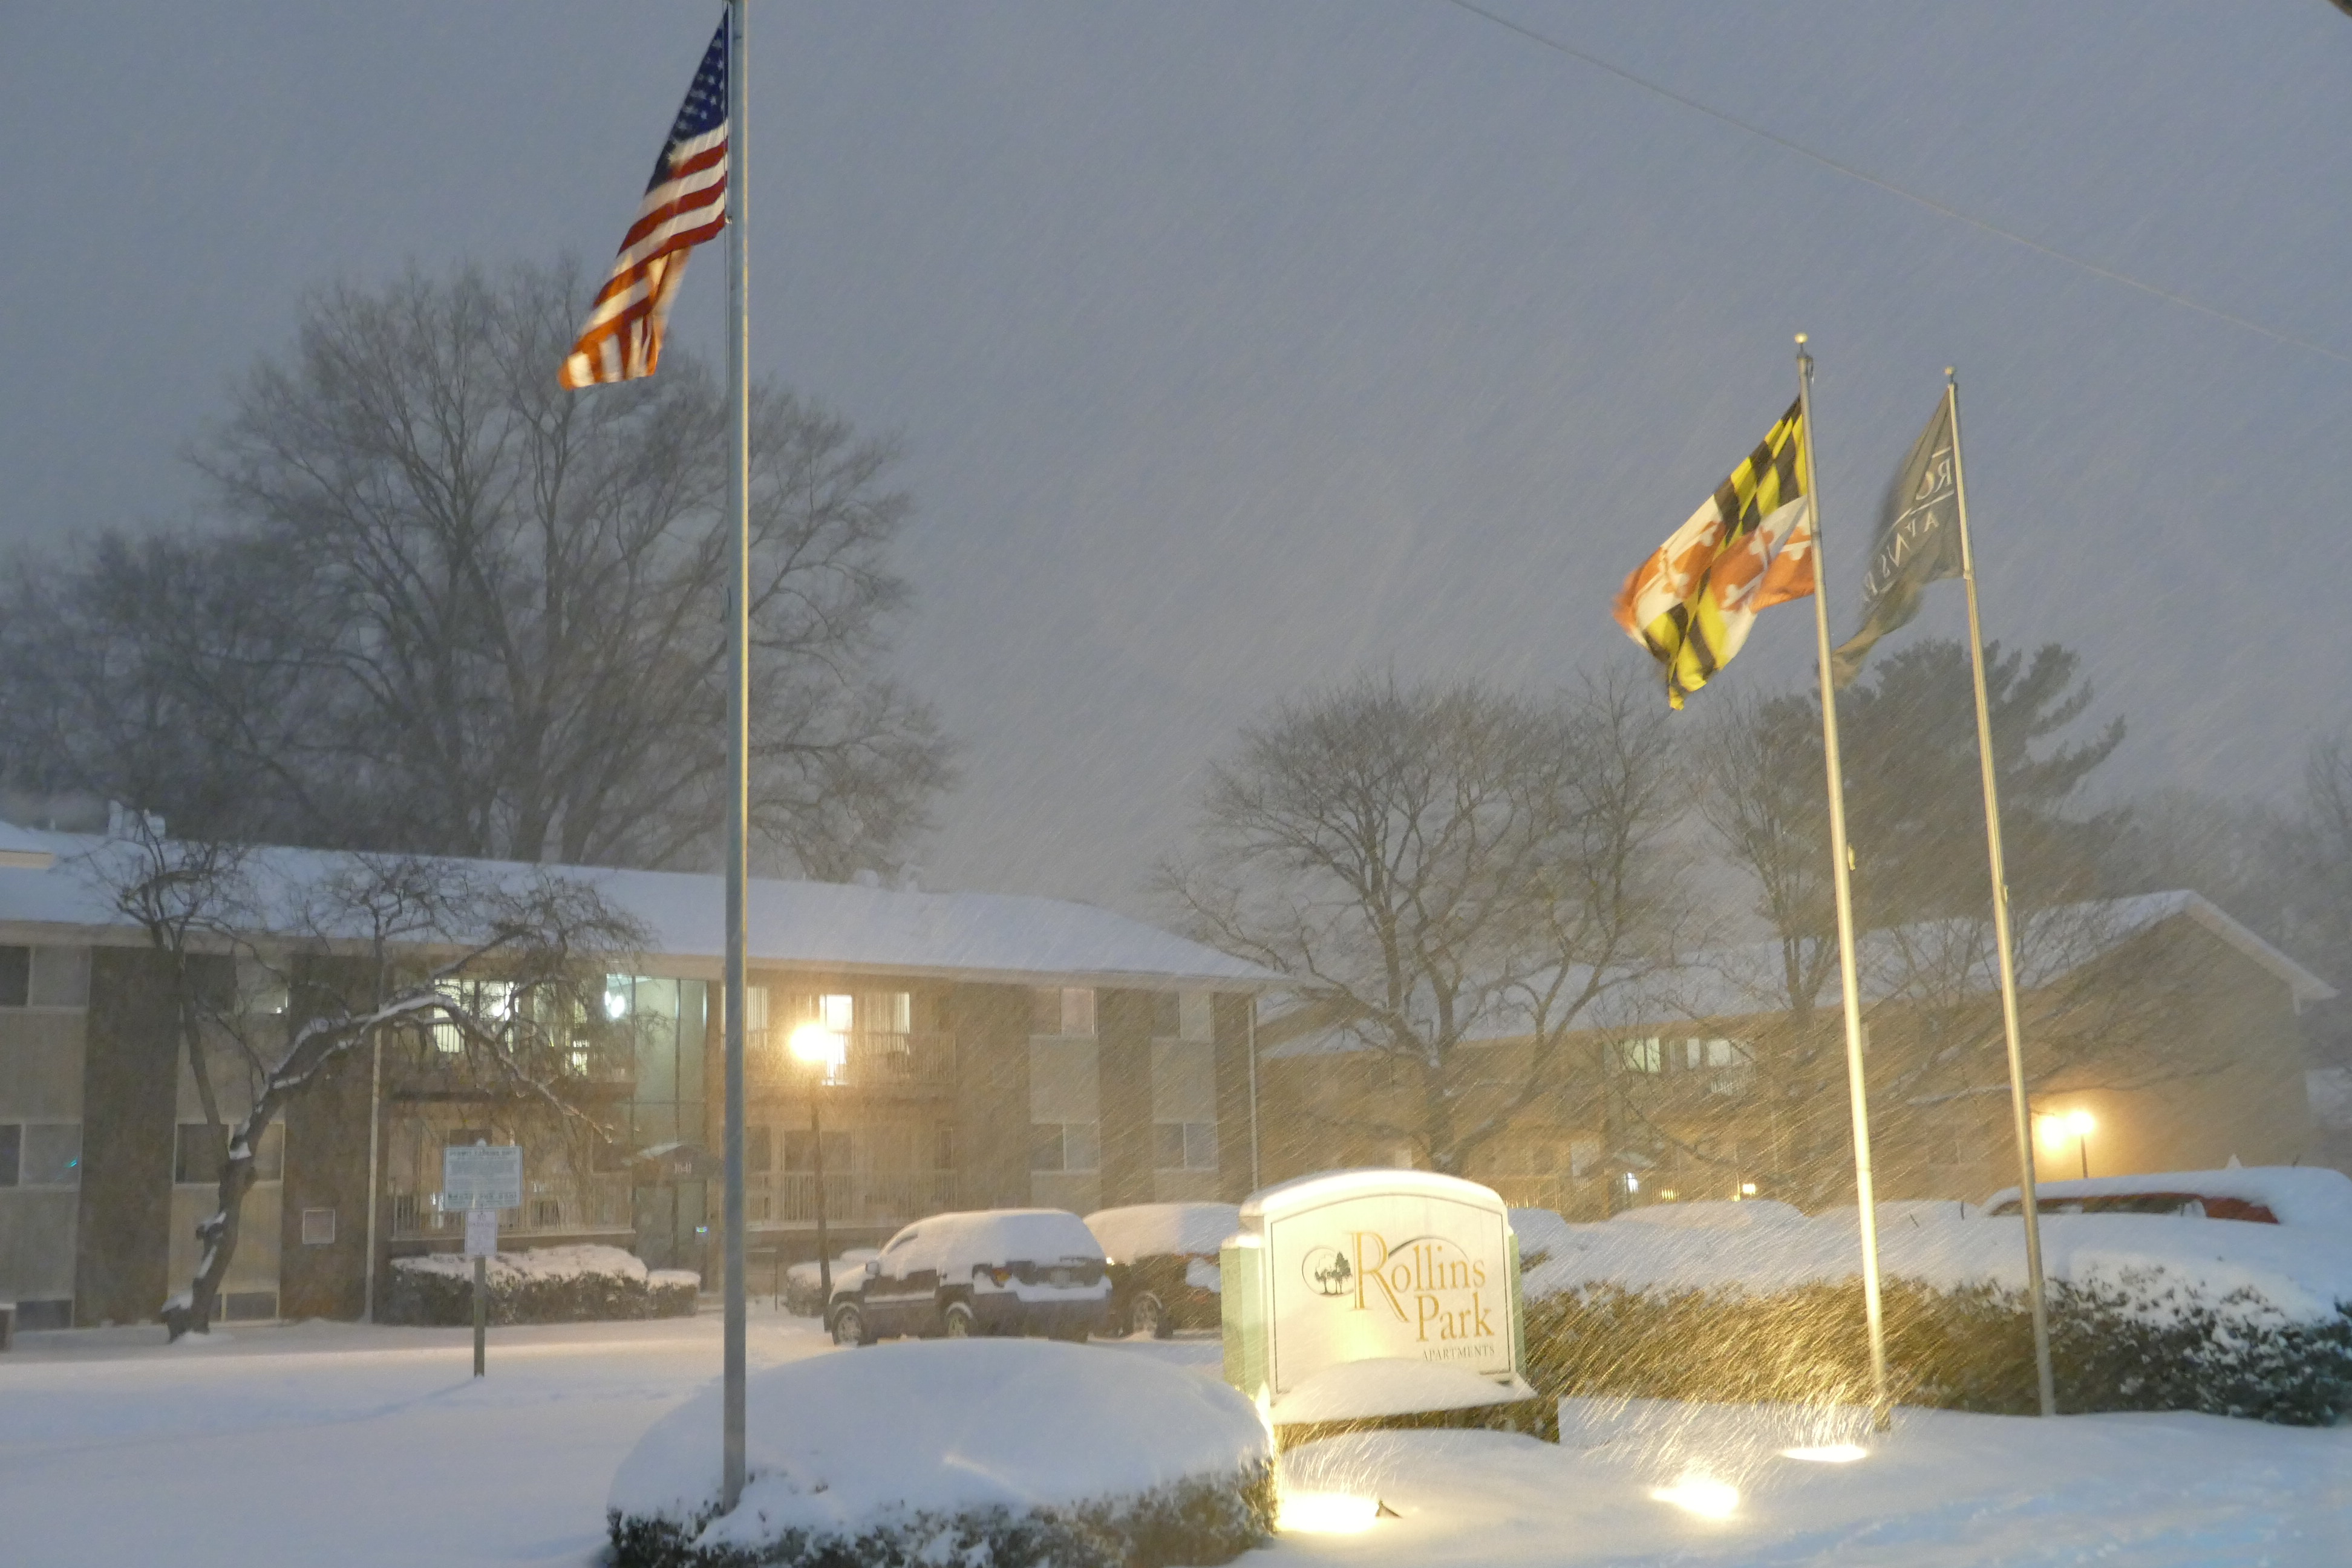 Đến 22 giờ 30 tối 22.1 (giờ Mỹ, tức 9 giờ 30 sáng 23.1 giờ VN) tuyết đã dày 20 cm ở thành phố Rockville, bang Maryland, cách Washington DC gần 30km về phía tây bắc - Ảnh: An Phạm